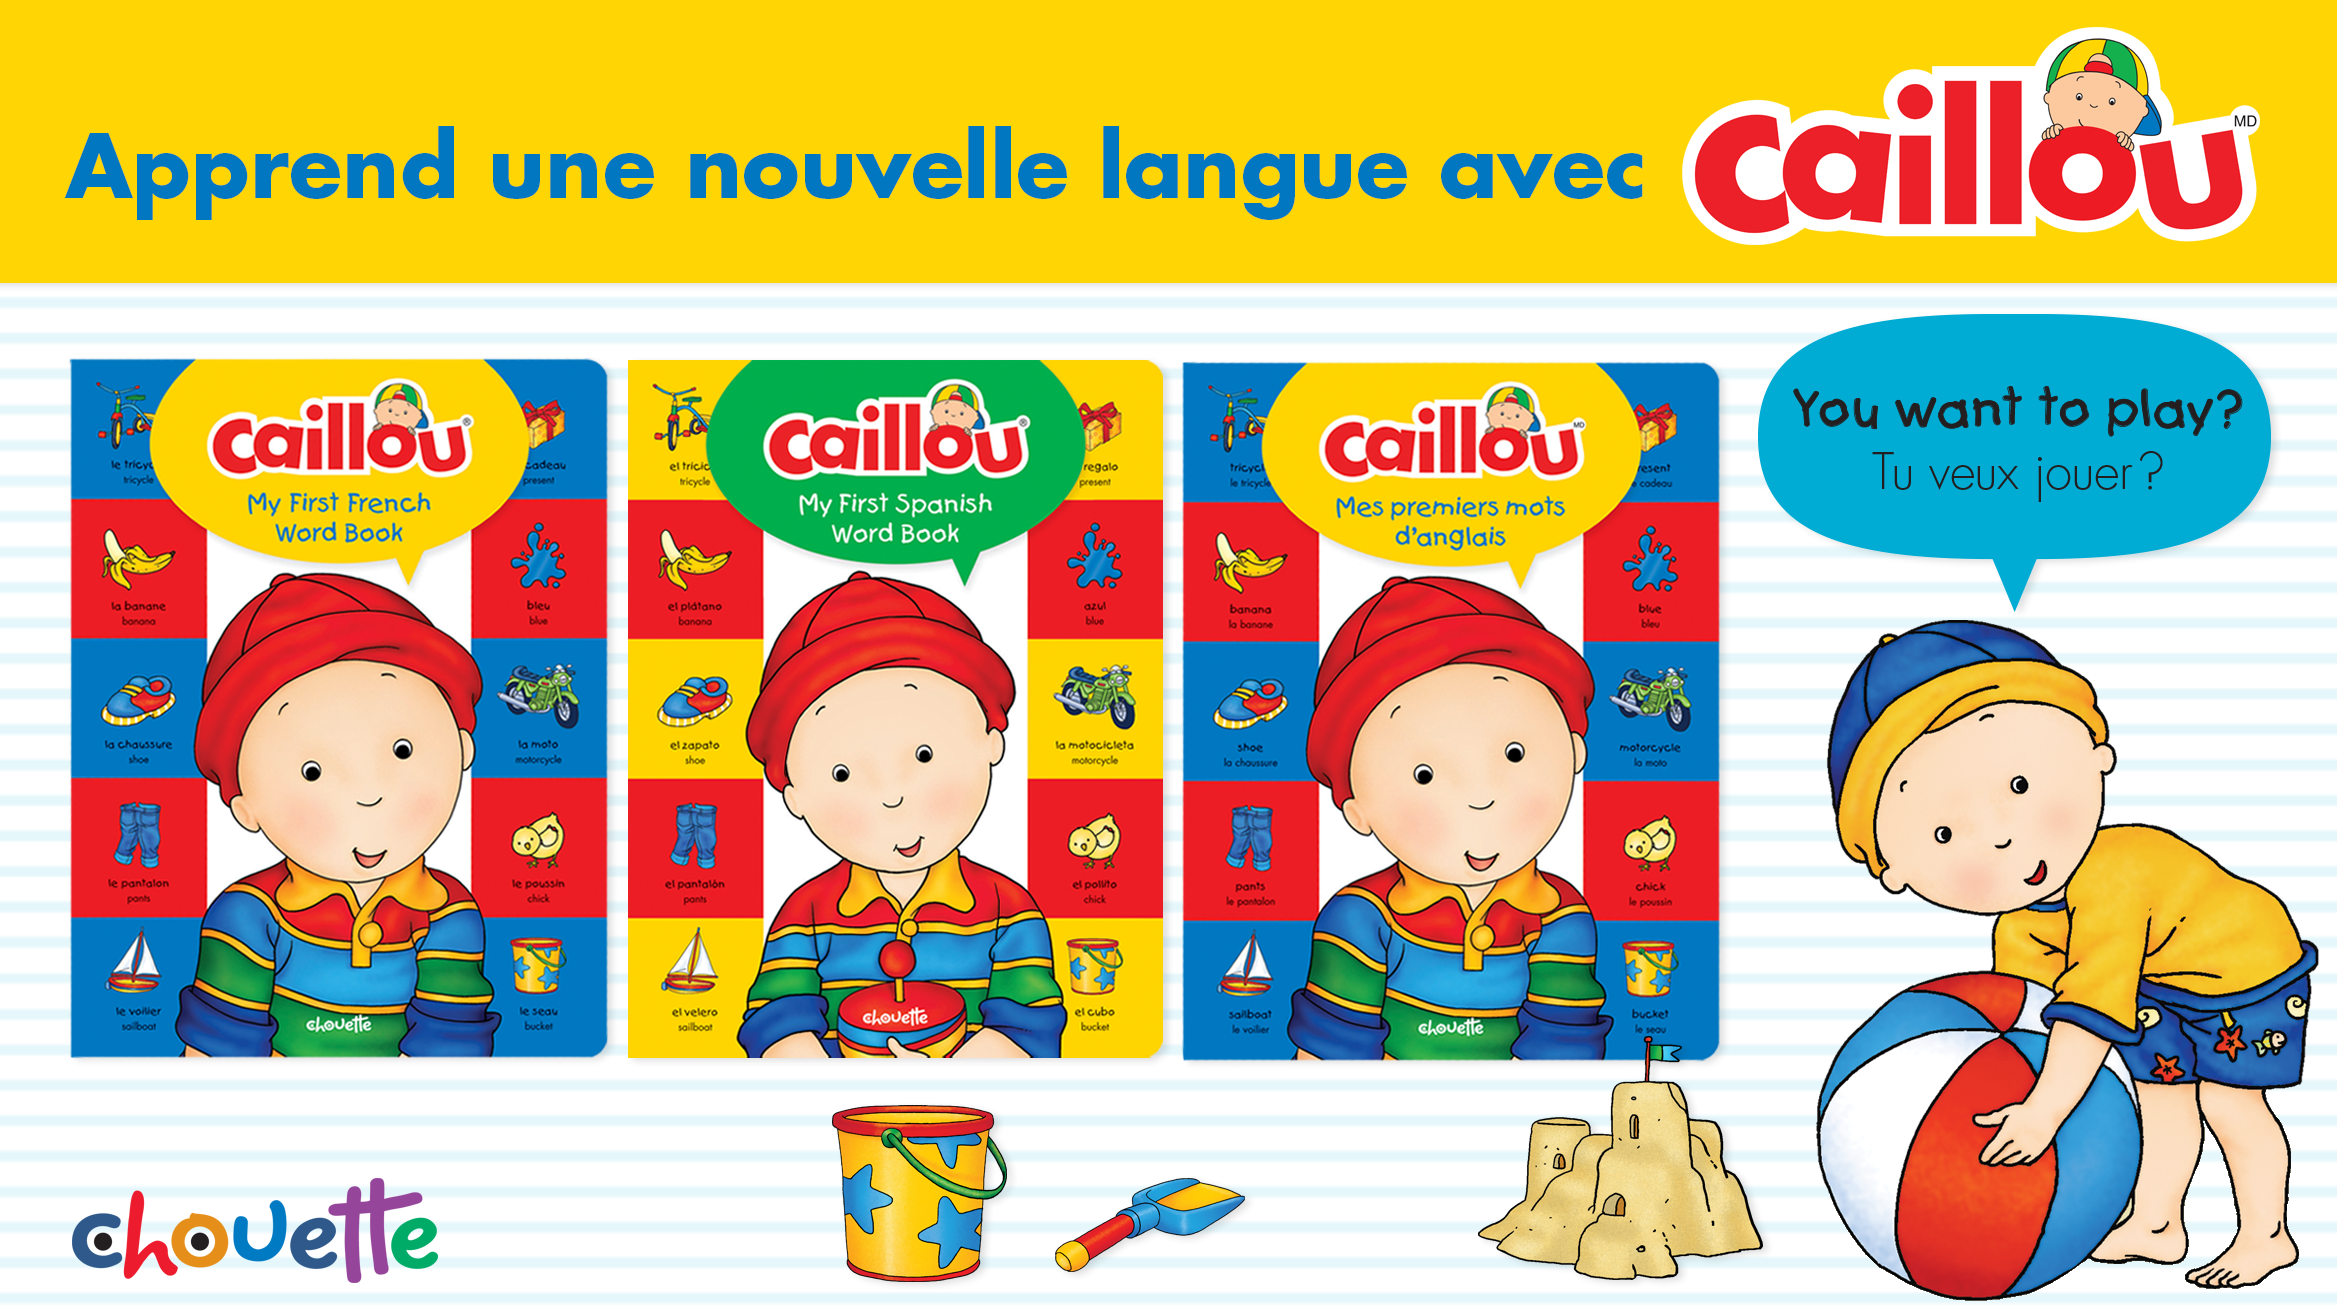 De nouveaux imagiers bilingues de Caillou! post image